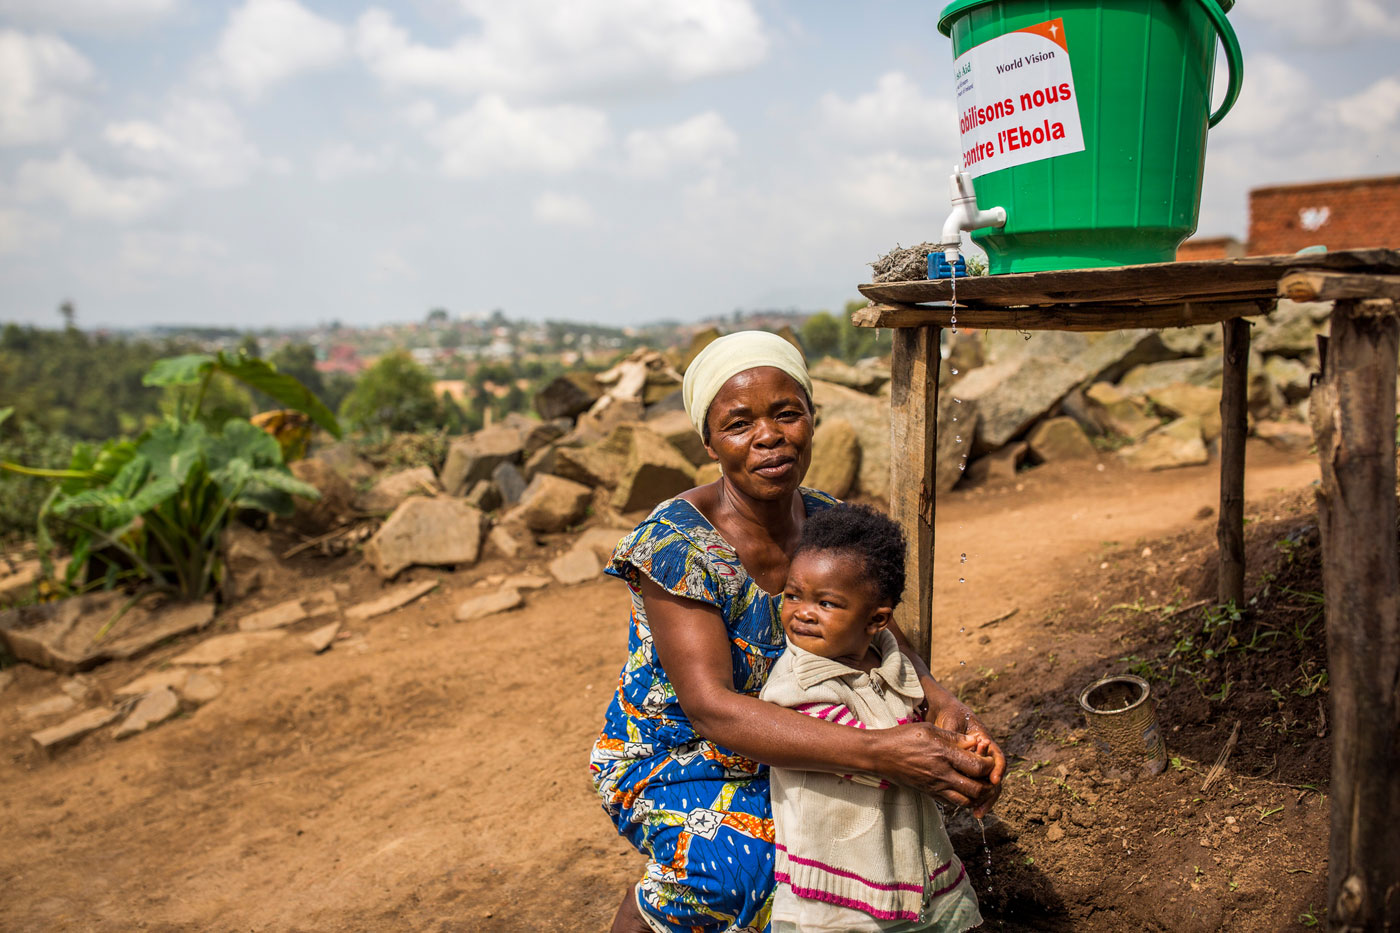 Eine Frau mit Kind vor einer von World Vision installierten Handwaschstation in der Demokratischen Republik Congo